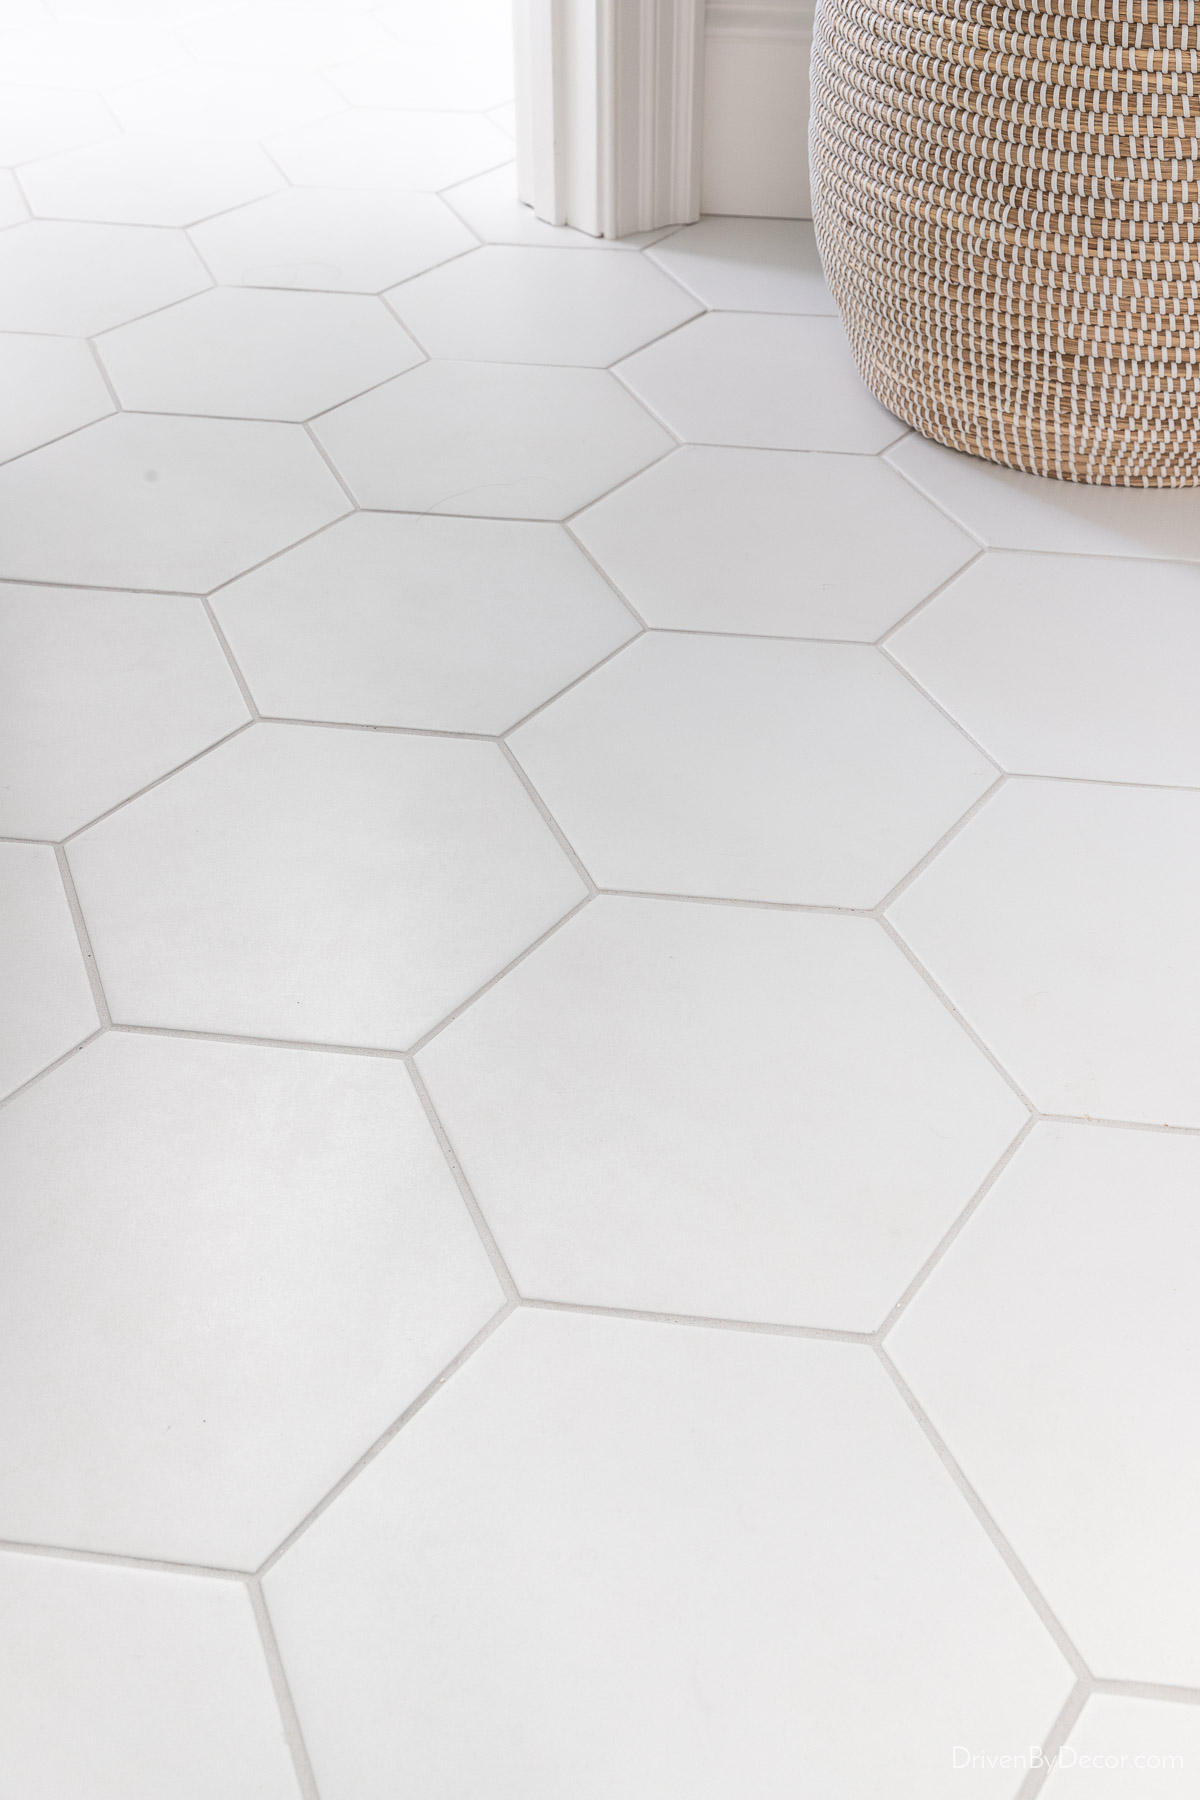 Large white hexagon tile on bathroom floor